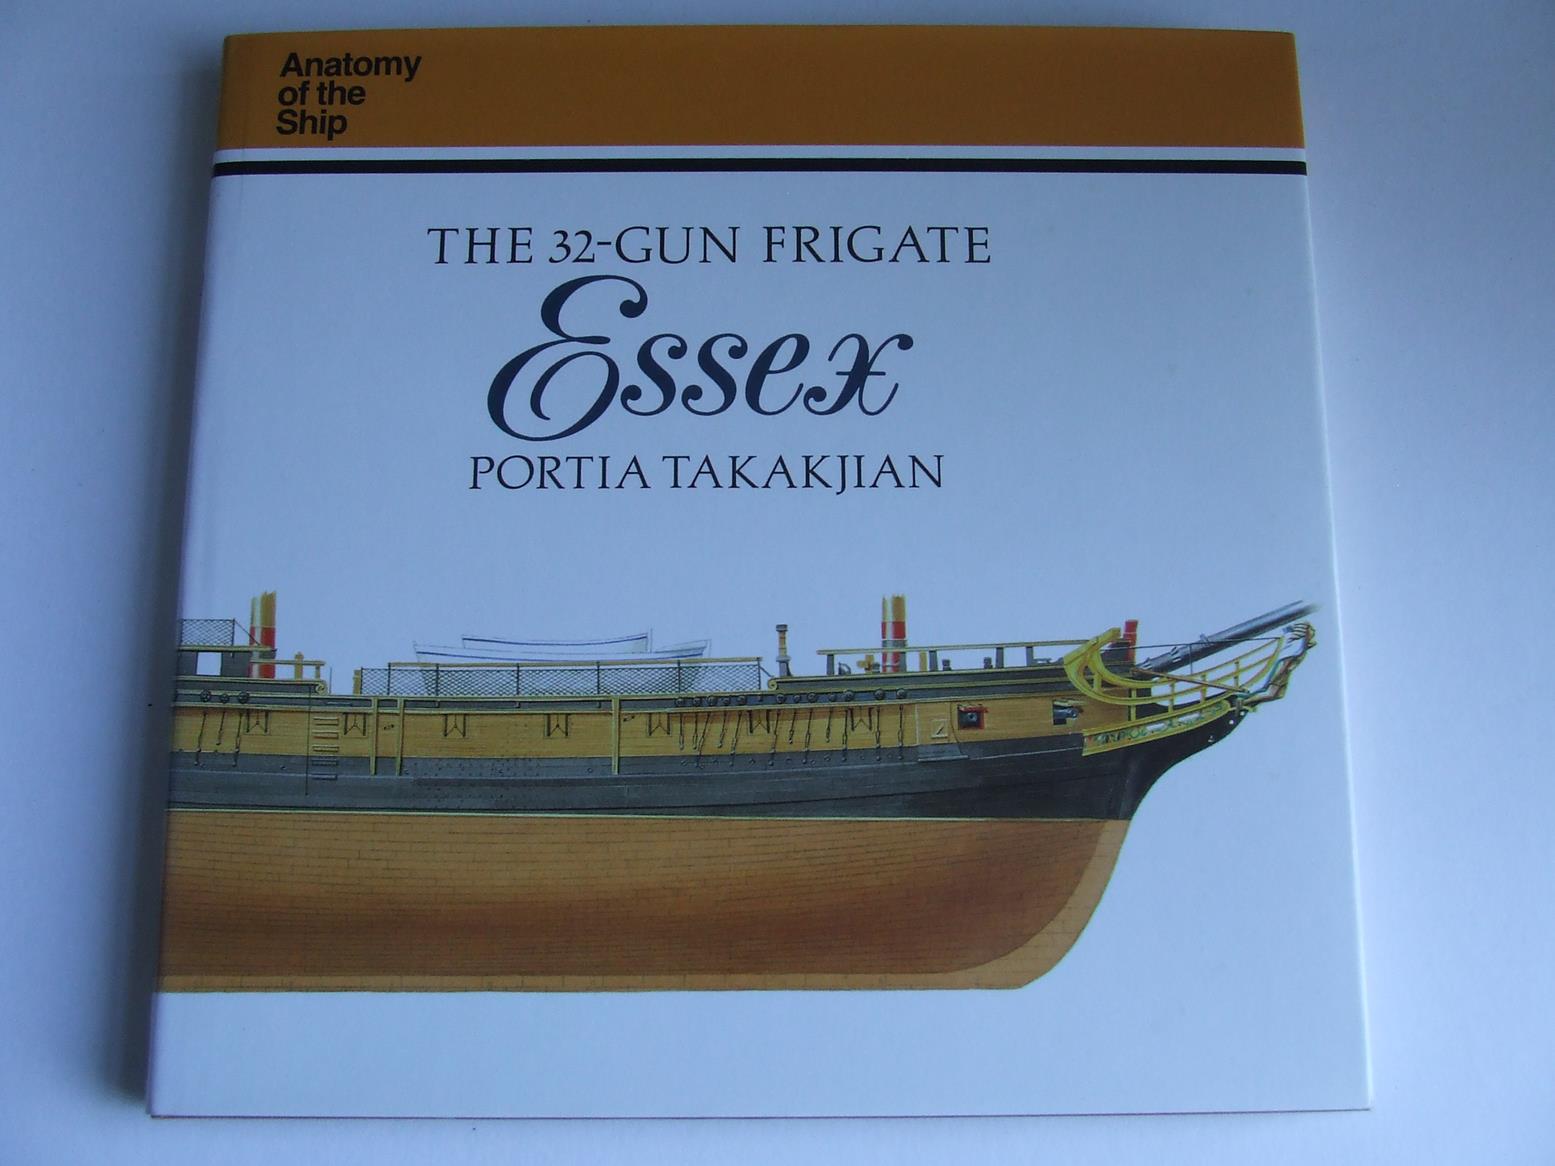 The 32-Gun Frigate "Essex" [1799 American frigate]